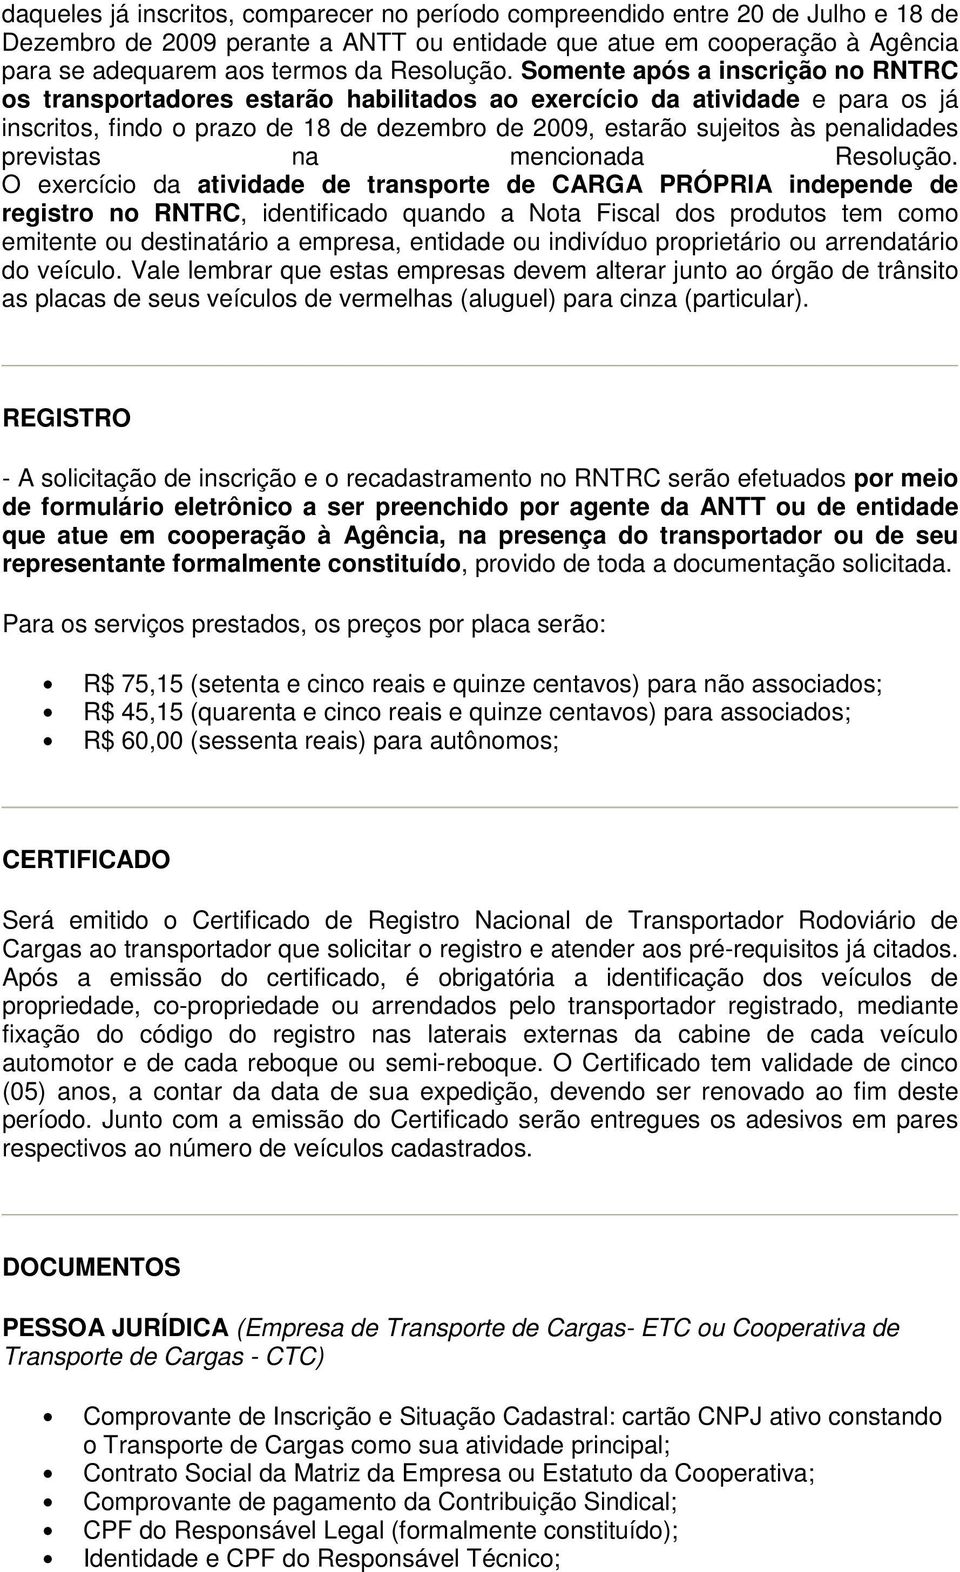 Somente após a inscrição no RNTRC os transportadores estarão habilitados ao exercício da atividade e para os já inscritos, findo o prazo de 18 de dezembro de 2009, estarão sujeitos às penalidades